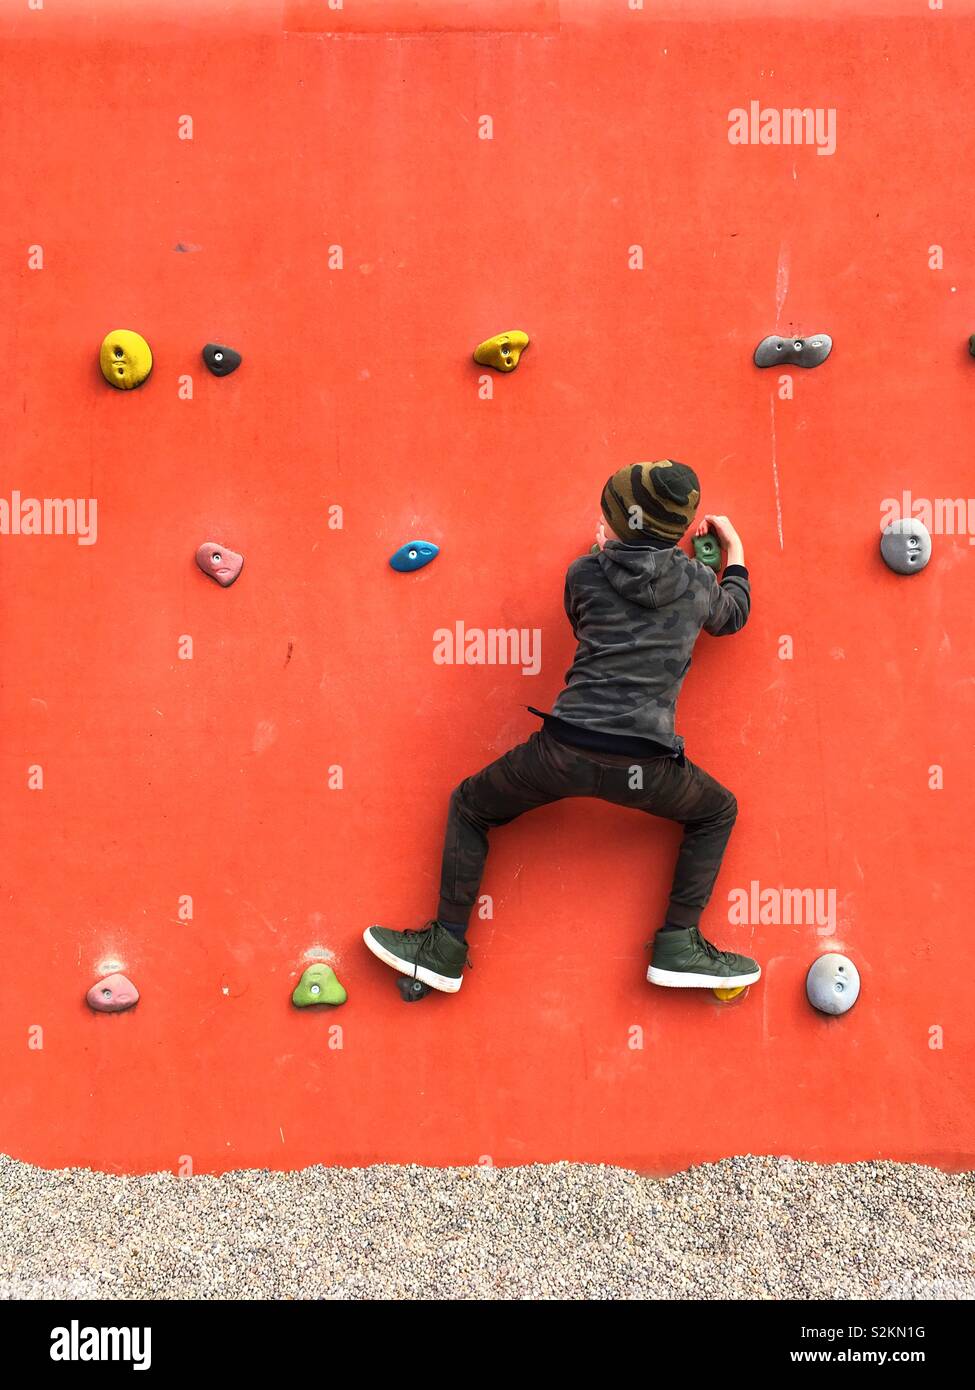 Un garçon de neuf ans sur le mur d'escalade dans le Queen Elizabeth Olympic Park, Stratford, London, Angleterre, Royaume-Uni. Banque D'Images